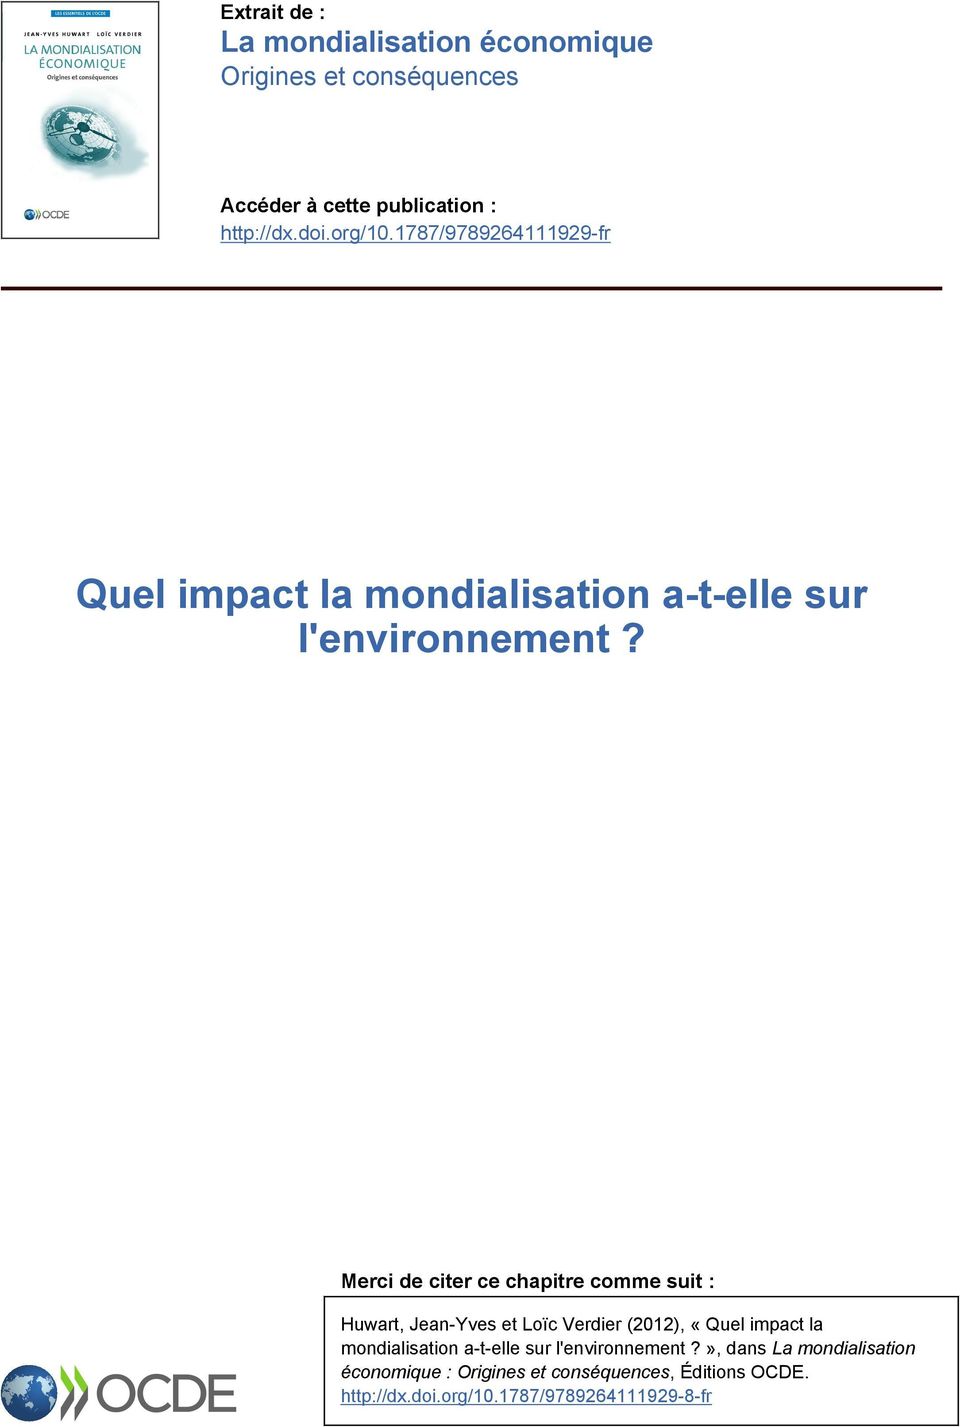 Merci de citer ce chapitre comme suit : Huwart, Jean-Yves et Loïc Verdier (2012), «Quel impact la mondialisation